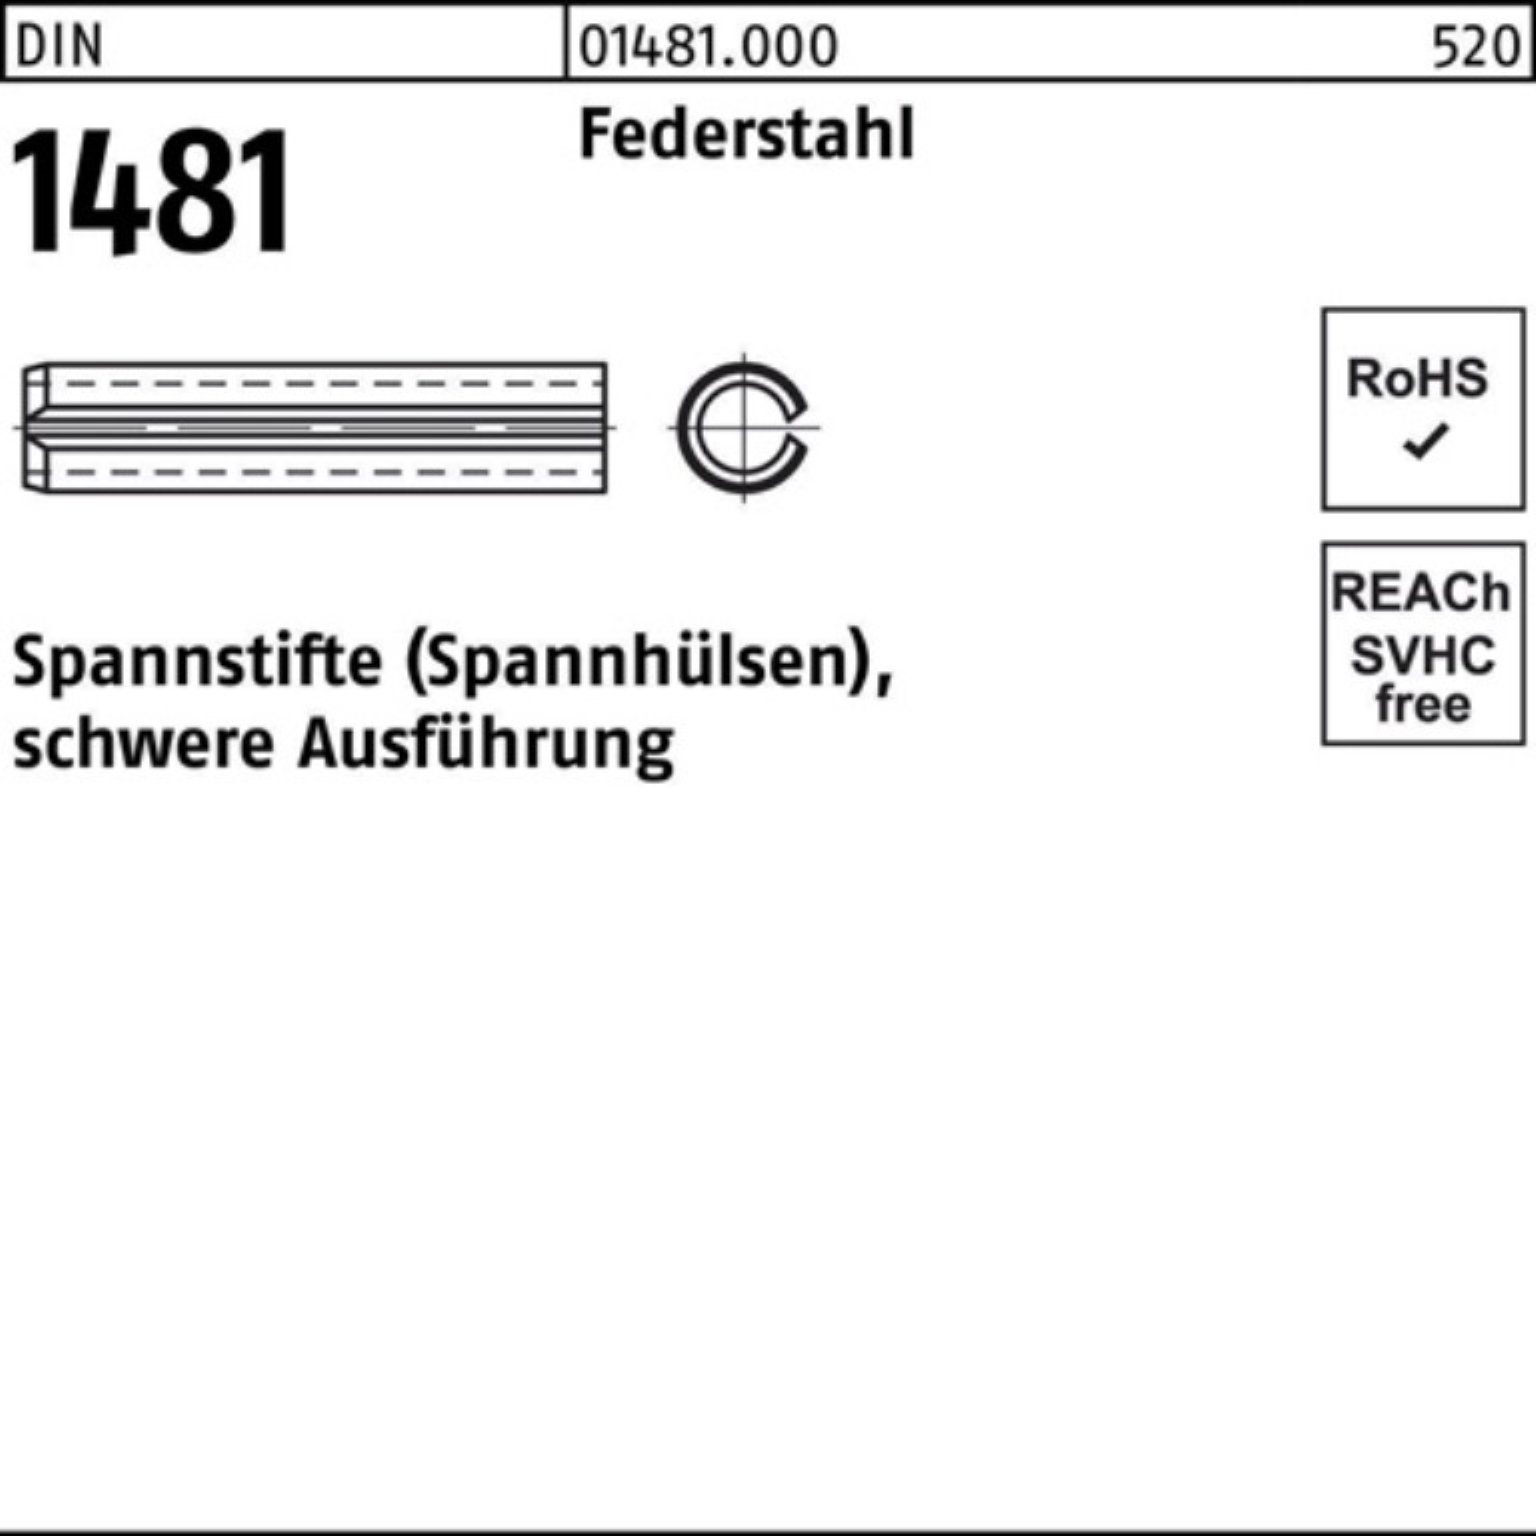 Reyher Spannstift 100er Pack DIN Spannstift 10 Ausführung 75 5x 1481 schwere Federstahl